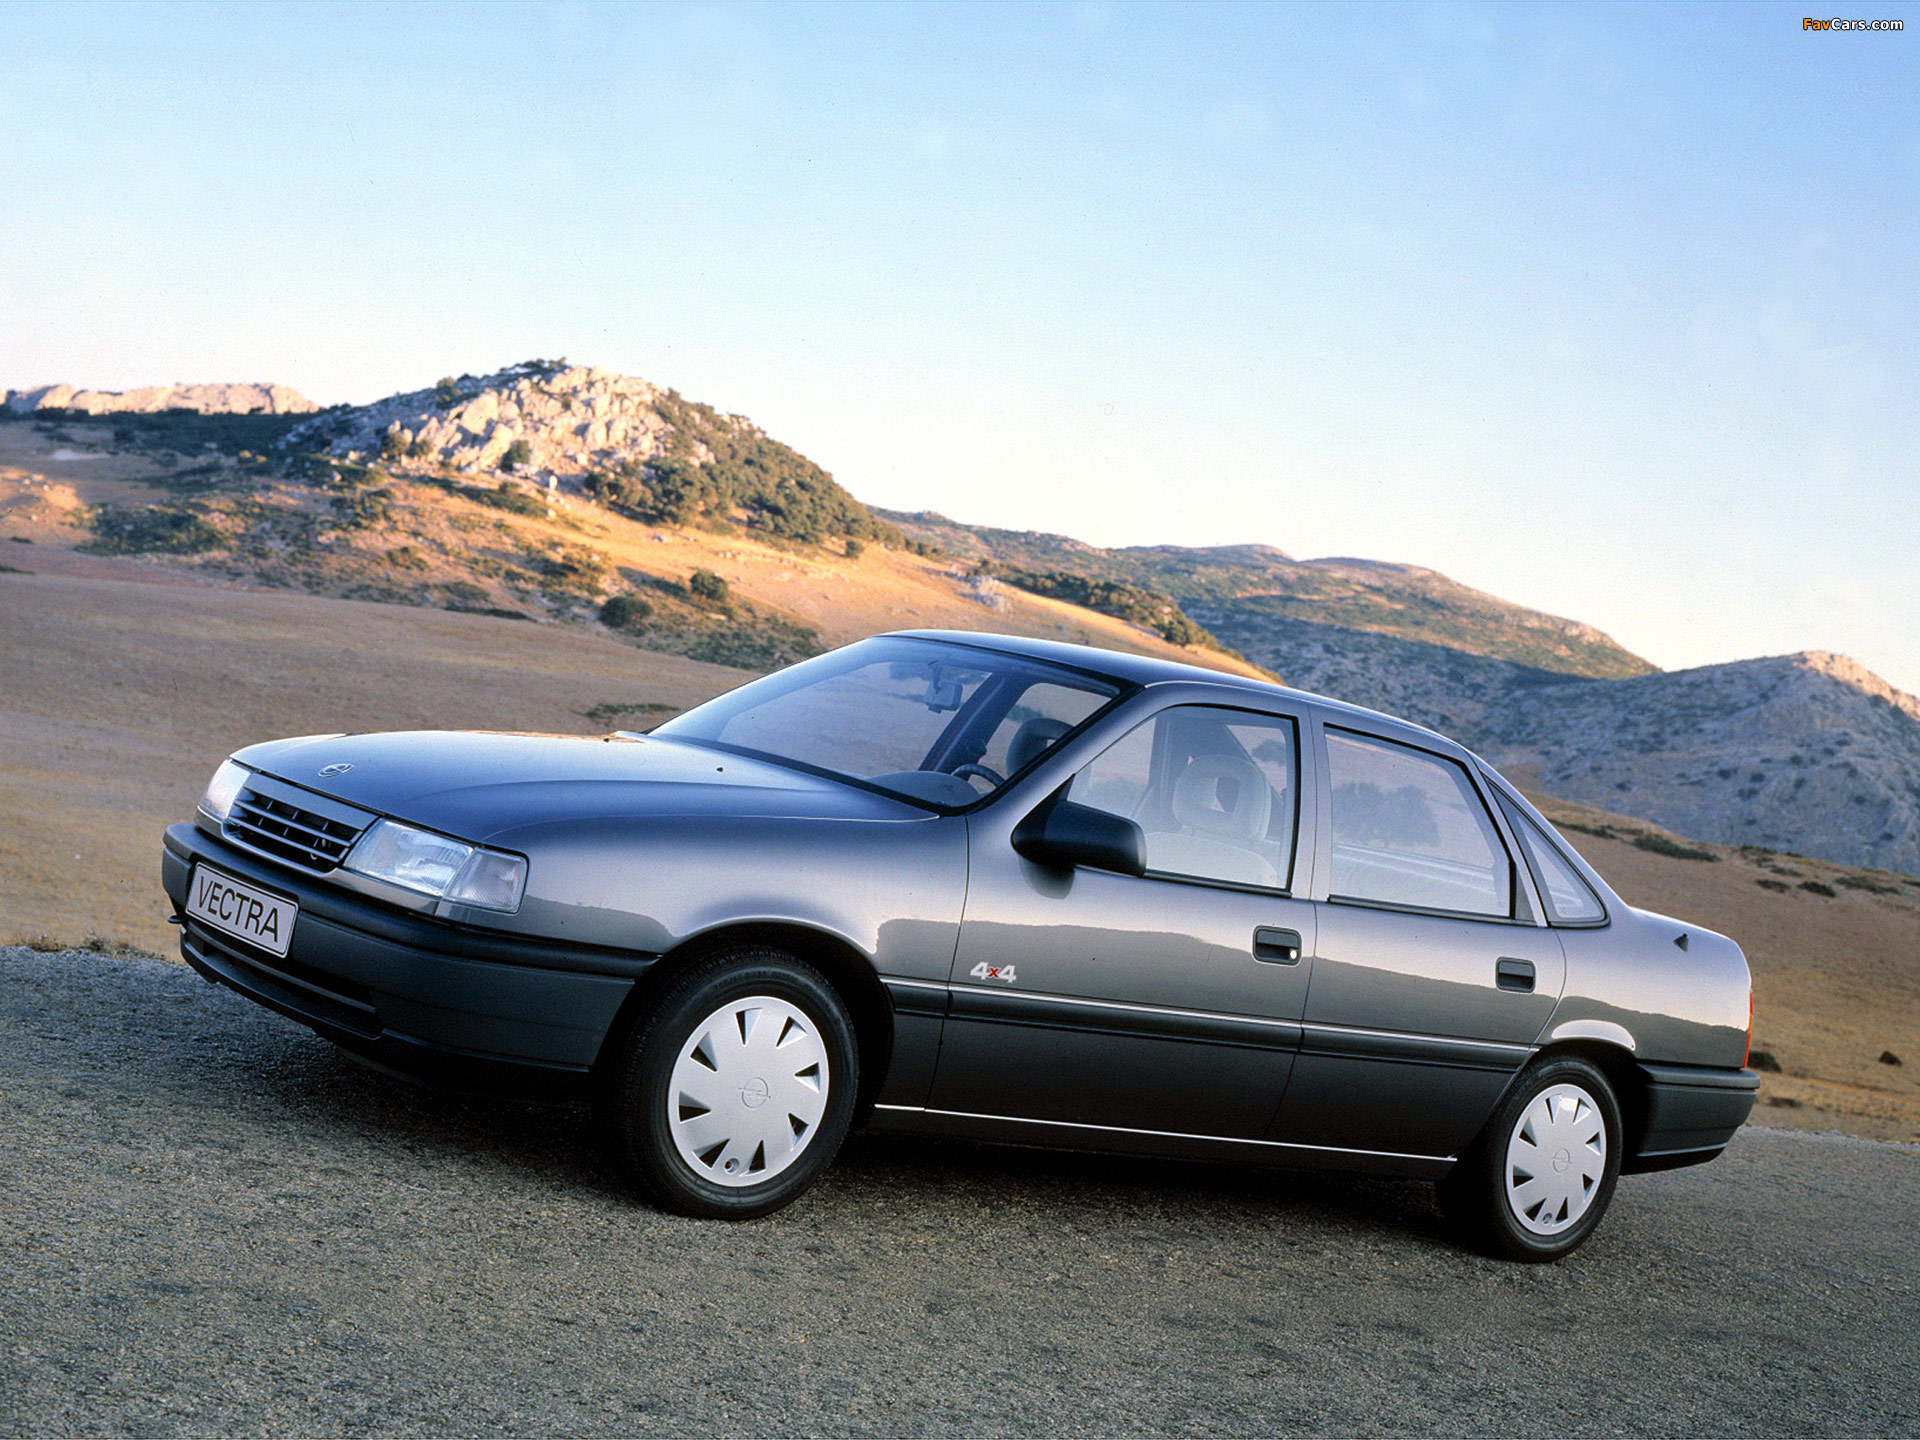 Вектра б 1.8 бензин. Opel Vectra 1.8. Опель Вектра с 1.8 1995. Opel Vectra 1988 седан. Опель Вектра 1995 седан.